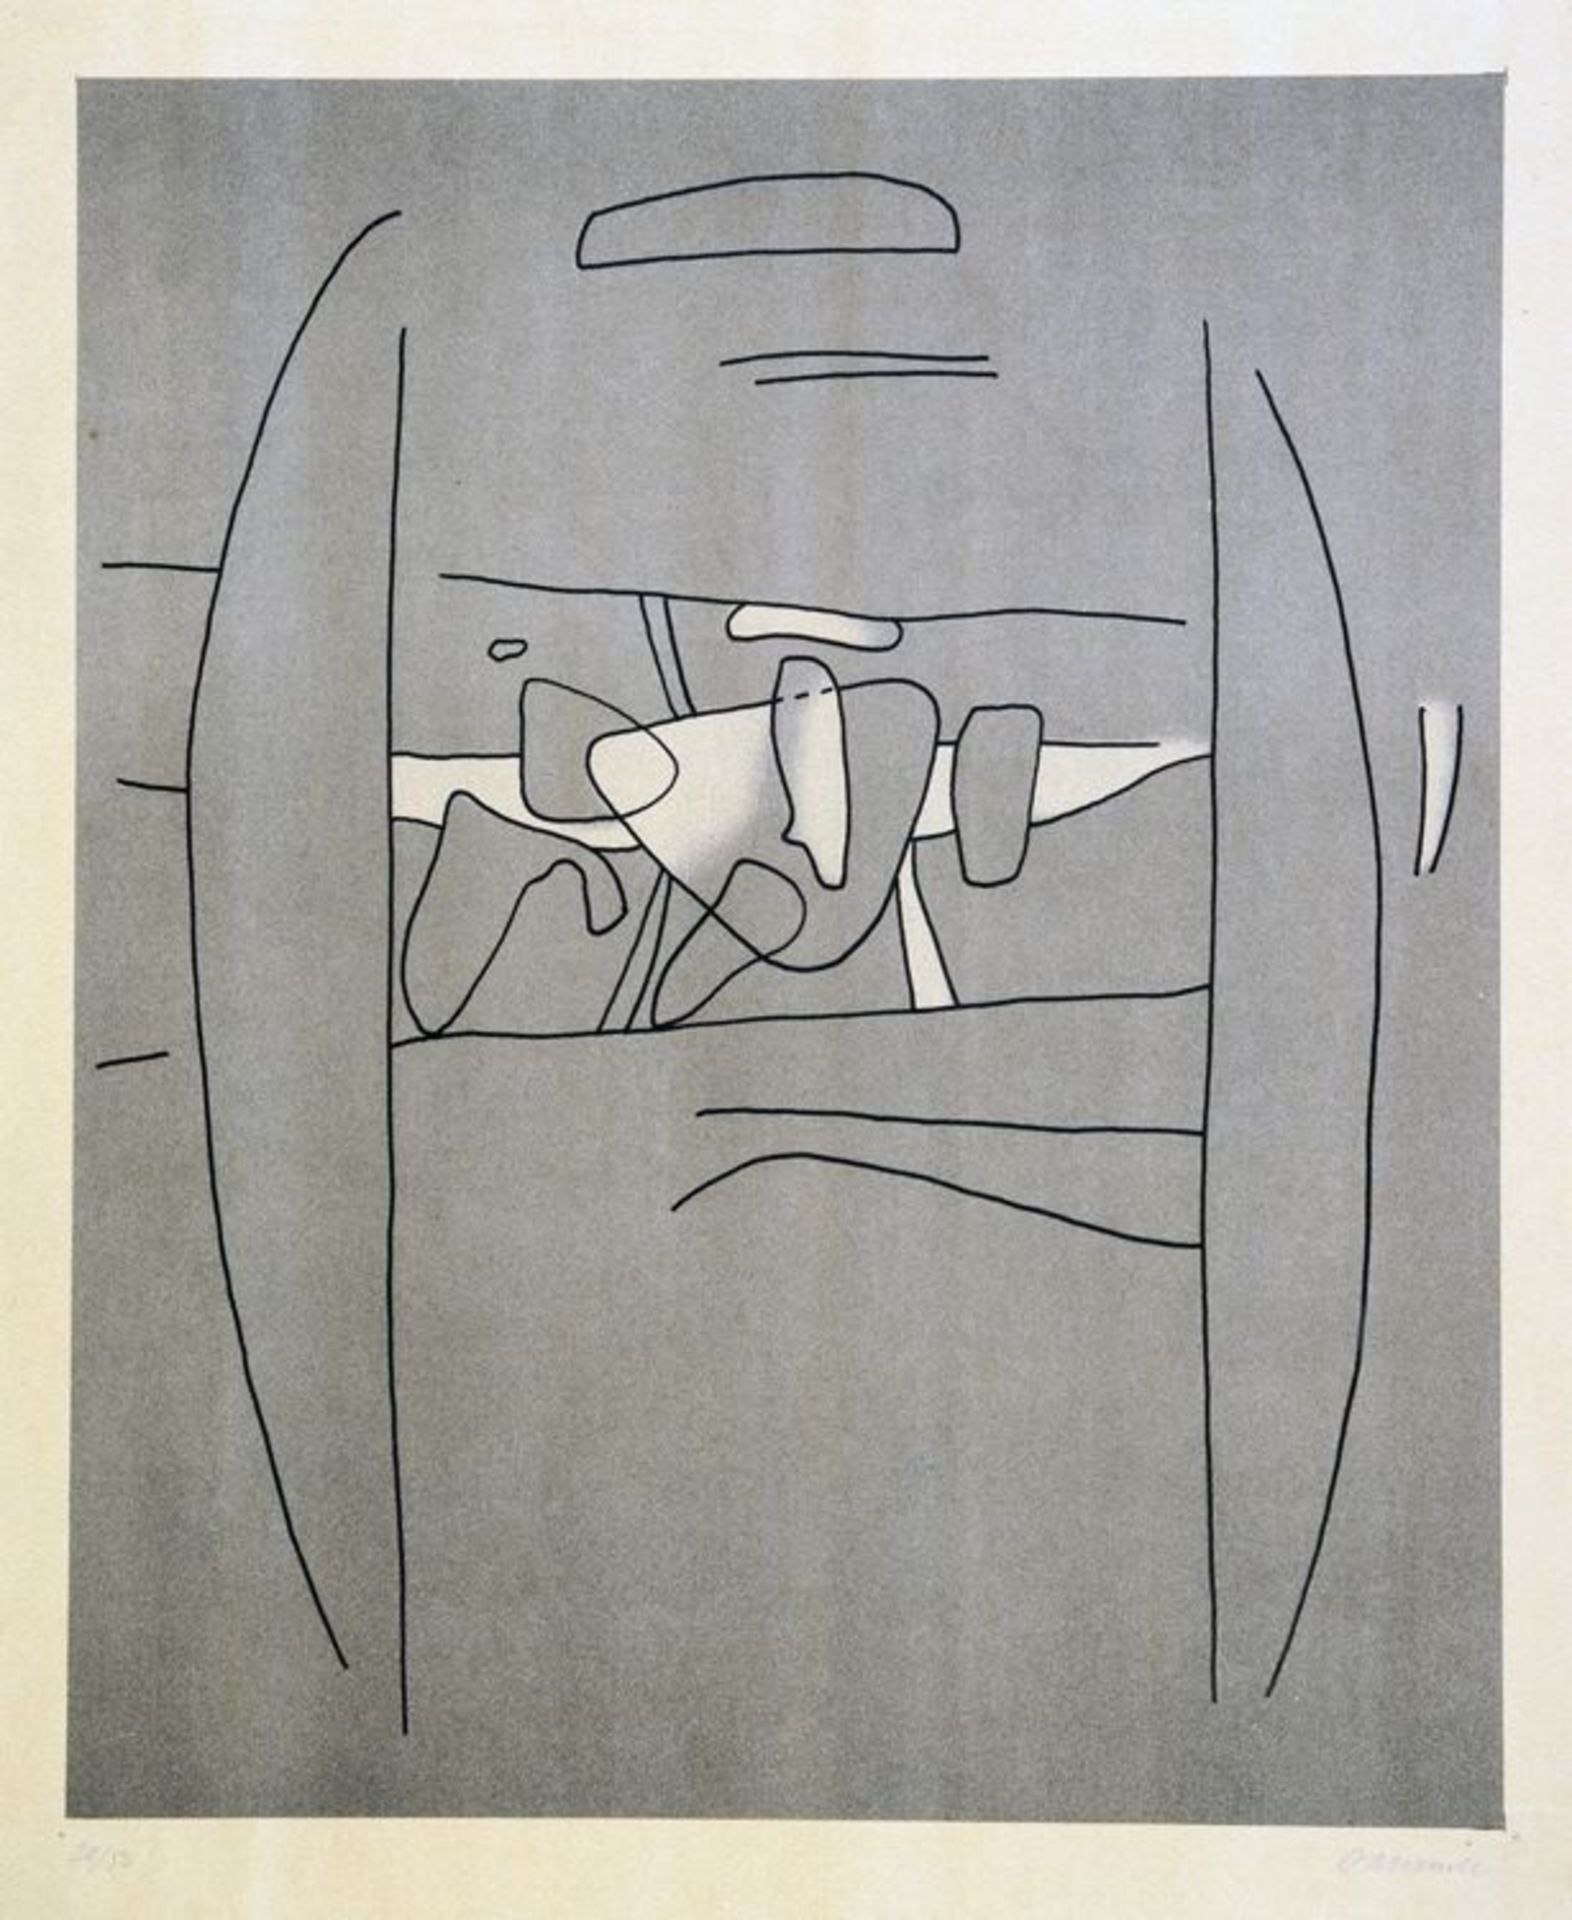 Willi Baumeister. Segmente mit Figurinen. Offsetlithographie. 1936. 38,4 : 31,5 cm (49,4 : 41,0 cm).